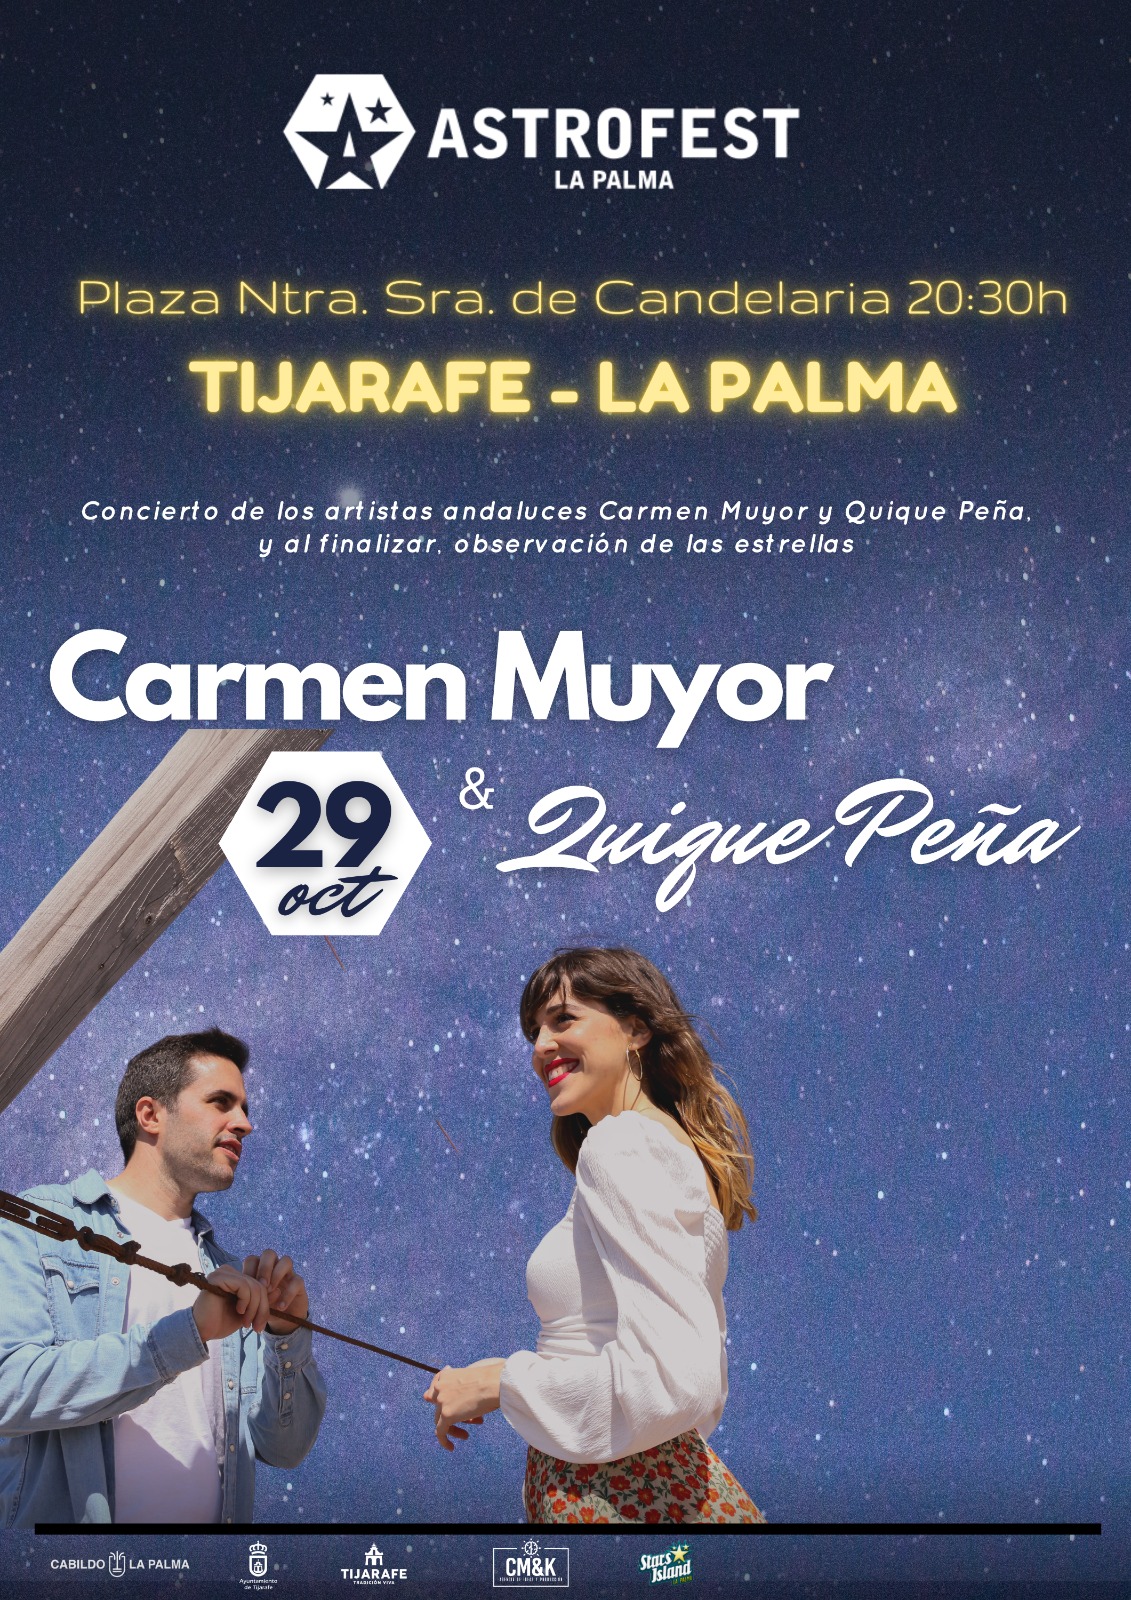 Astrofest: Concierto de Carmen Muyor & Quique Peña y observación de estrellas